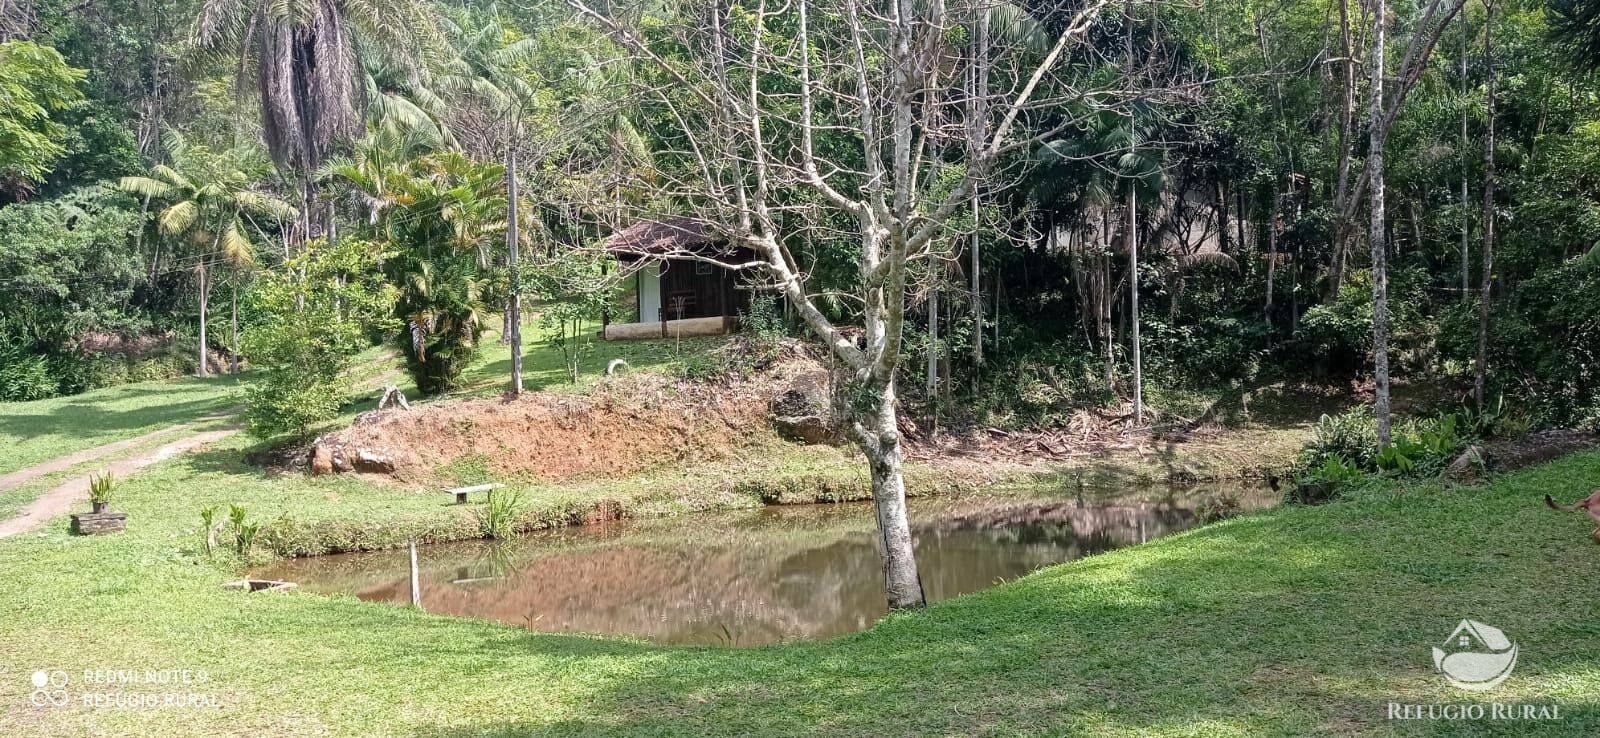 Sítio de 2 ha em São José dos Campos, SP